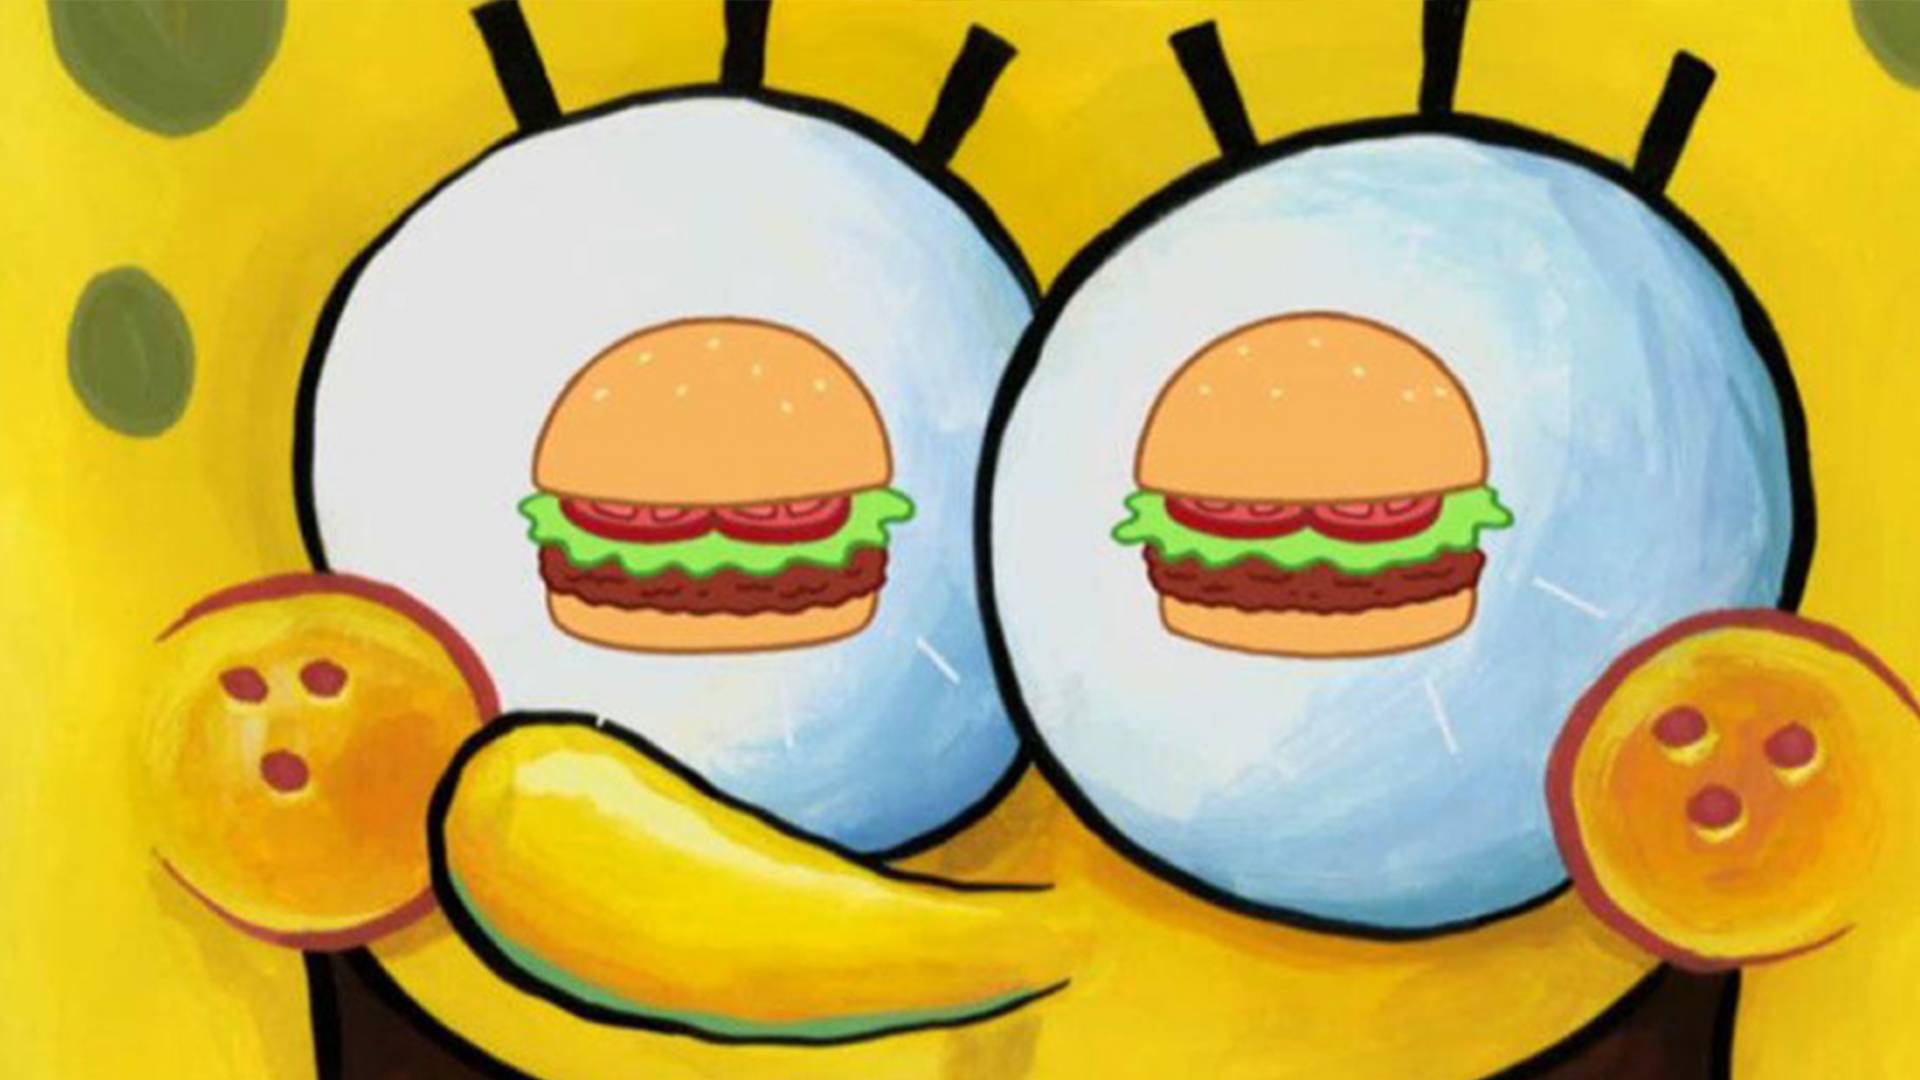 El ingrediente secreto de la Cangreburger fue descubierto por el internet |  News | MTV